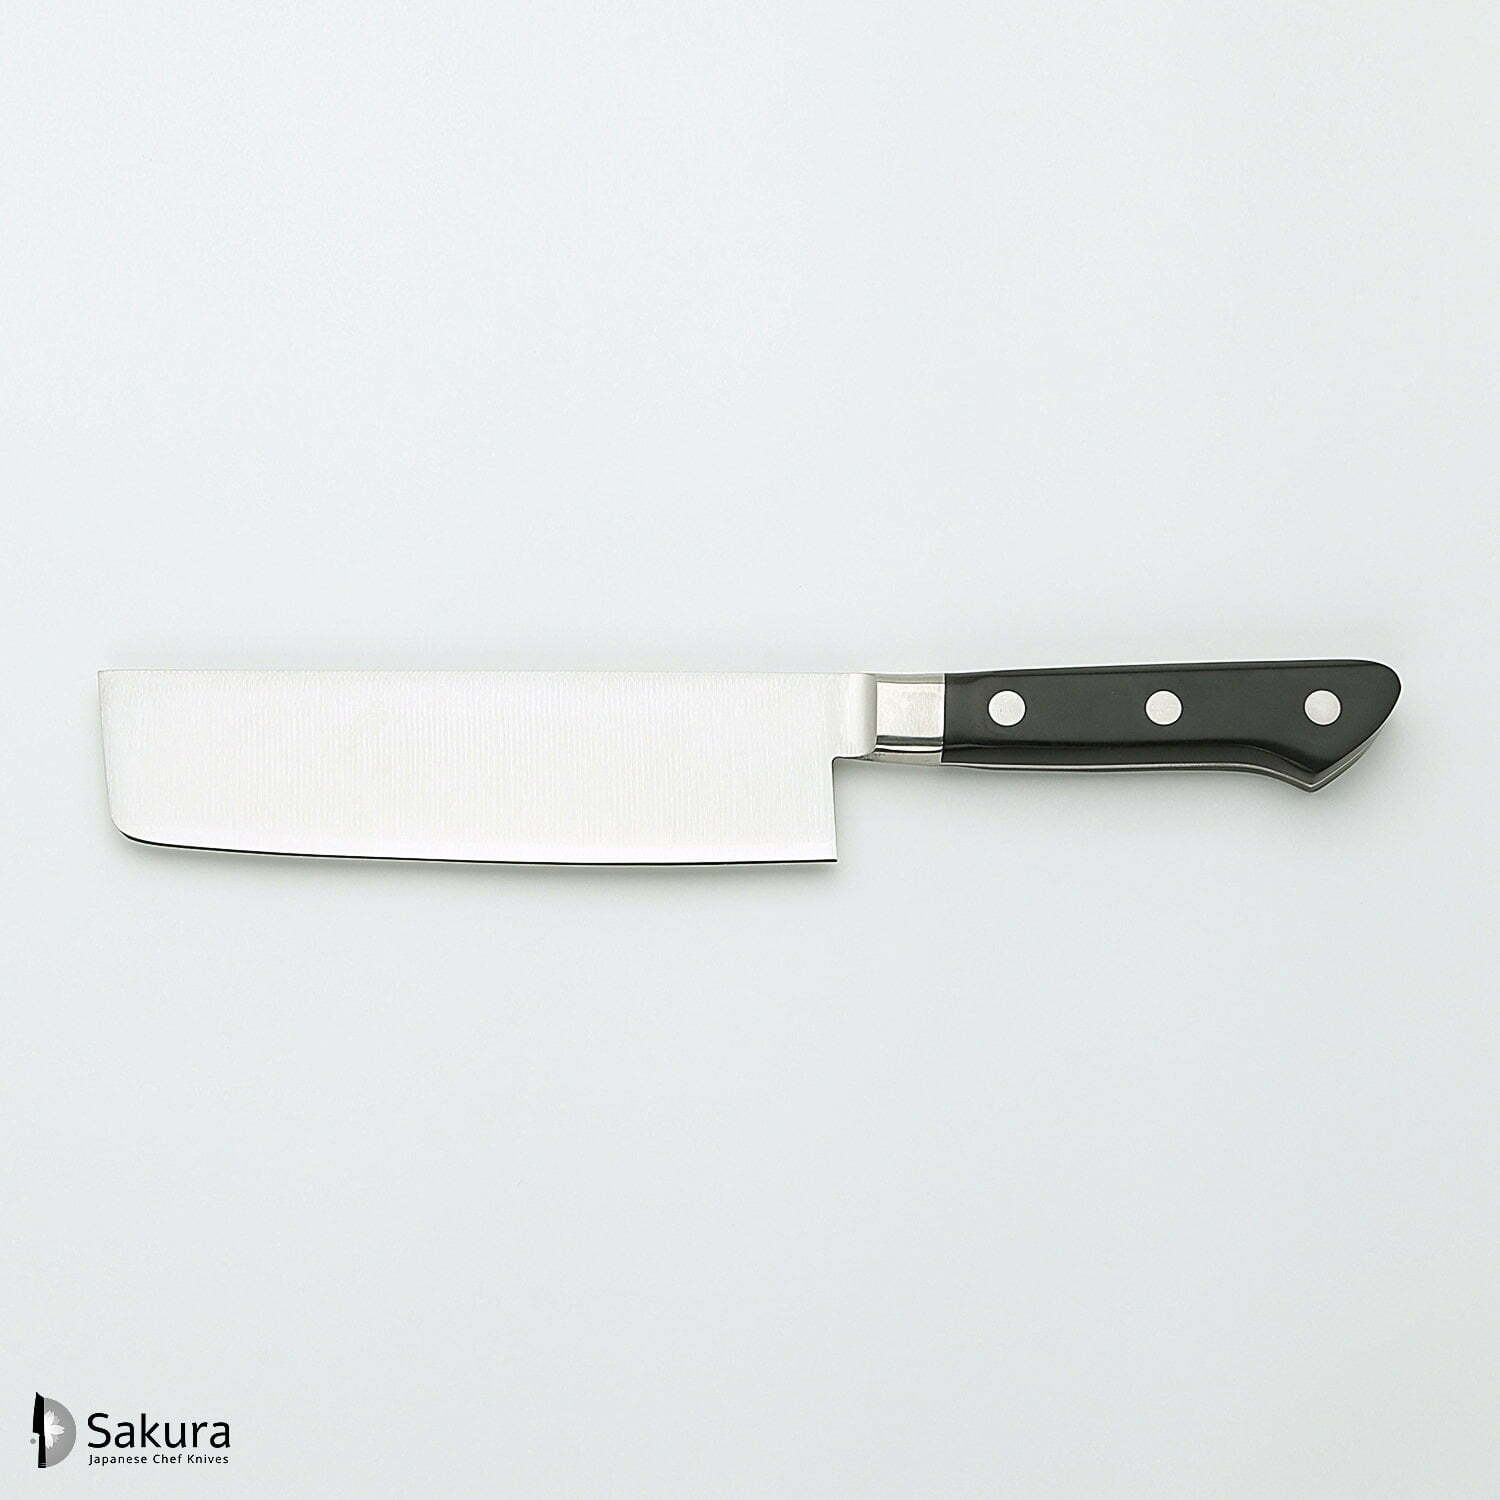 סכין ירקות נַקִירִי 165מ״מ מחוזקת 3 שכבות: פלדת פחמן יפנית VG-10 עטופה פלדת אל-חלד גימור מט מלוטש טוג׳ירו יפן